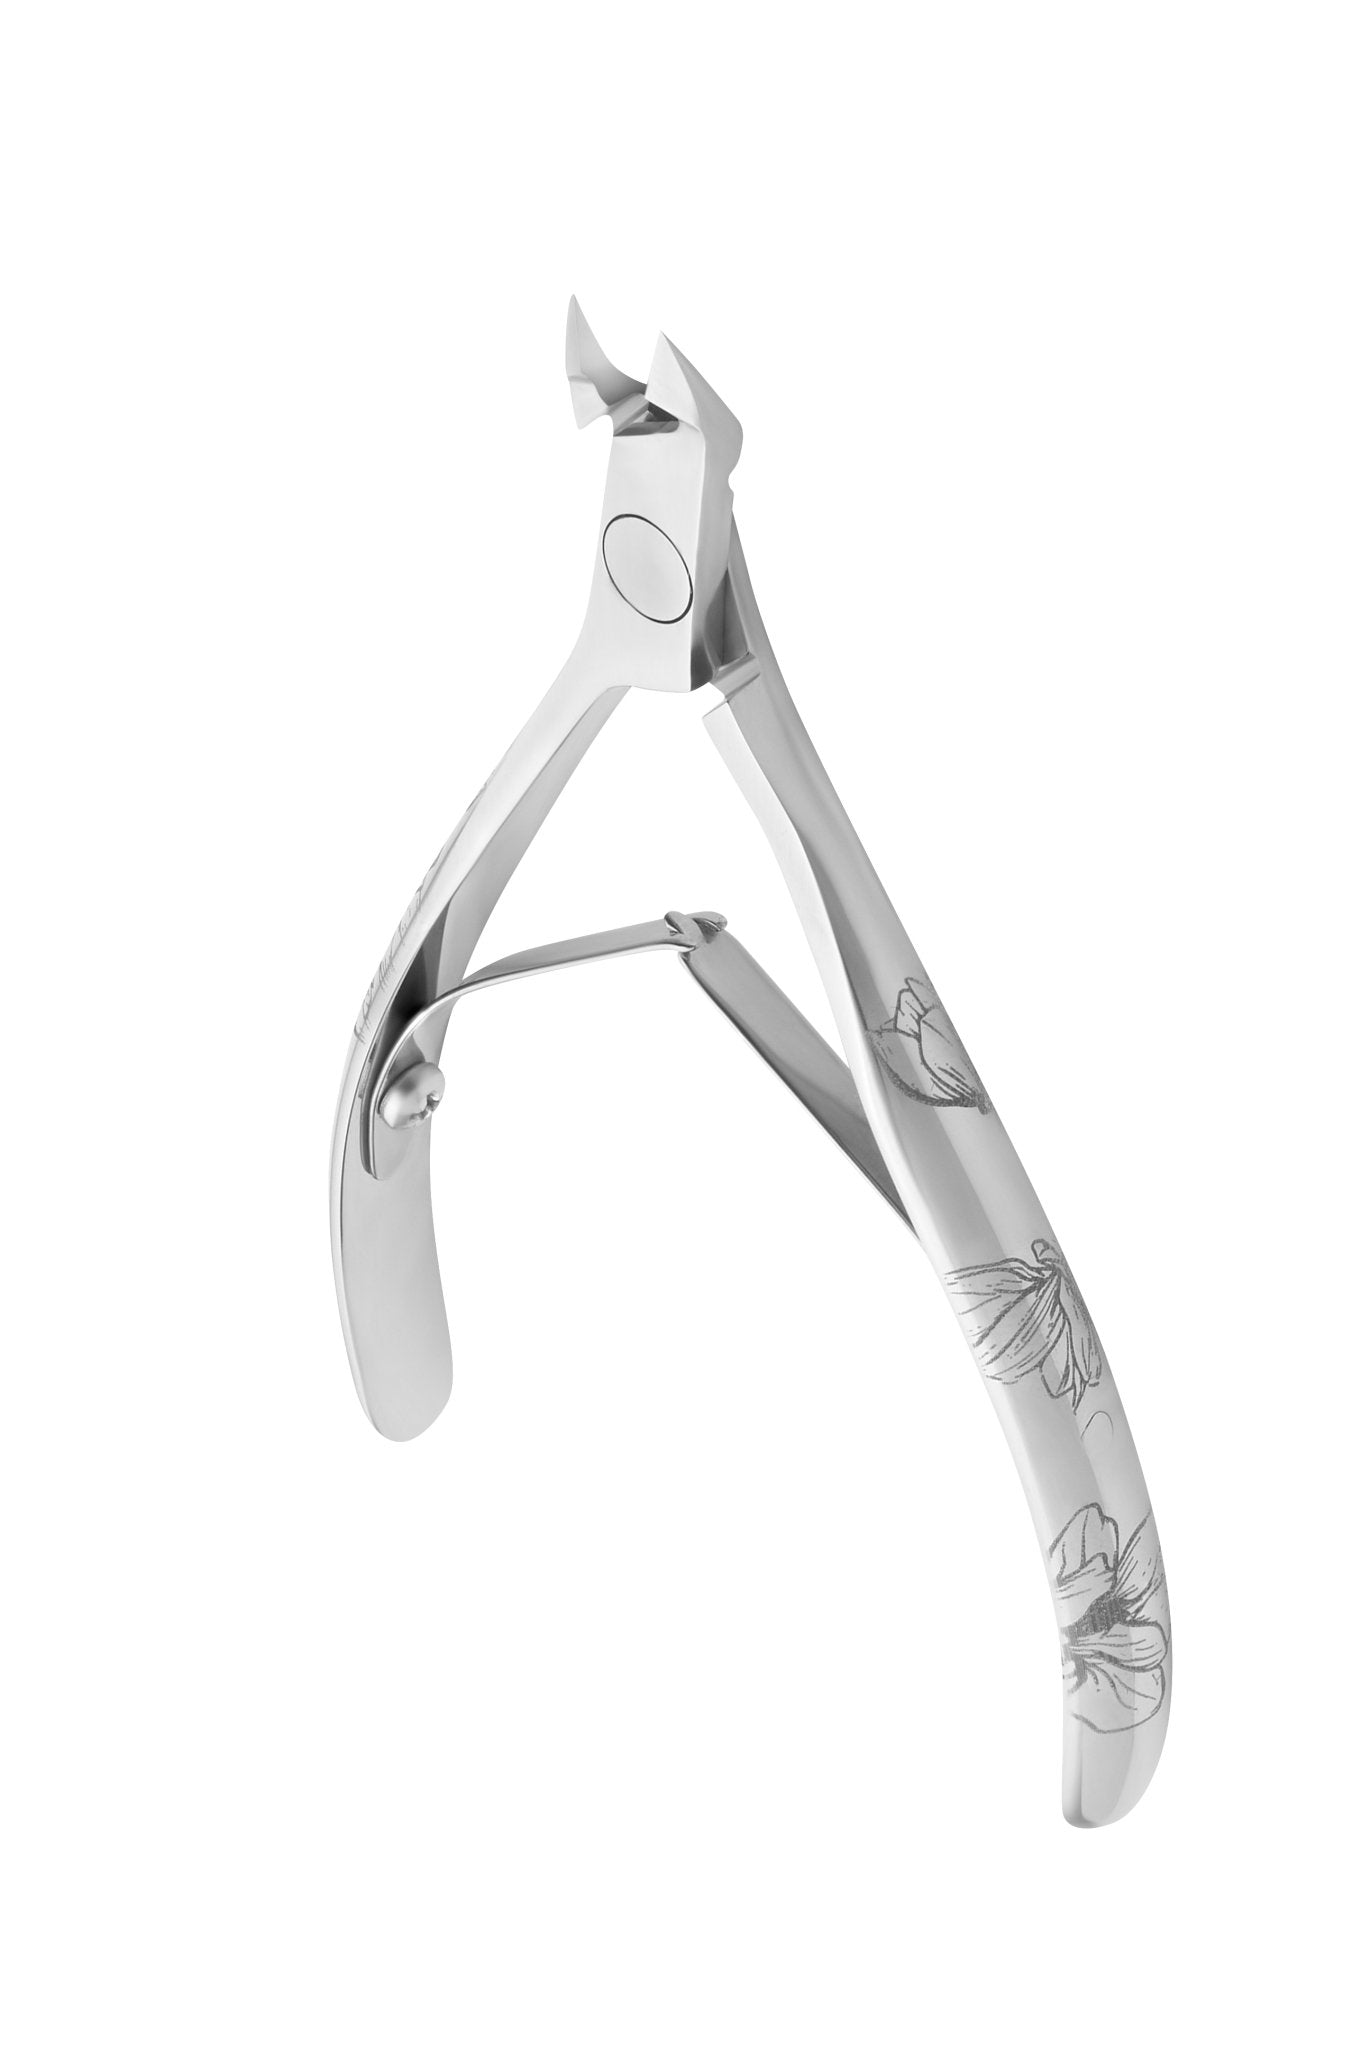 Staleks Cuticle Nipper Exclusive 20 - 5 mm jaw - U-tools